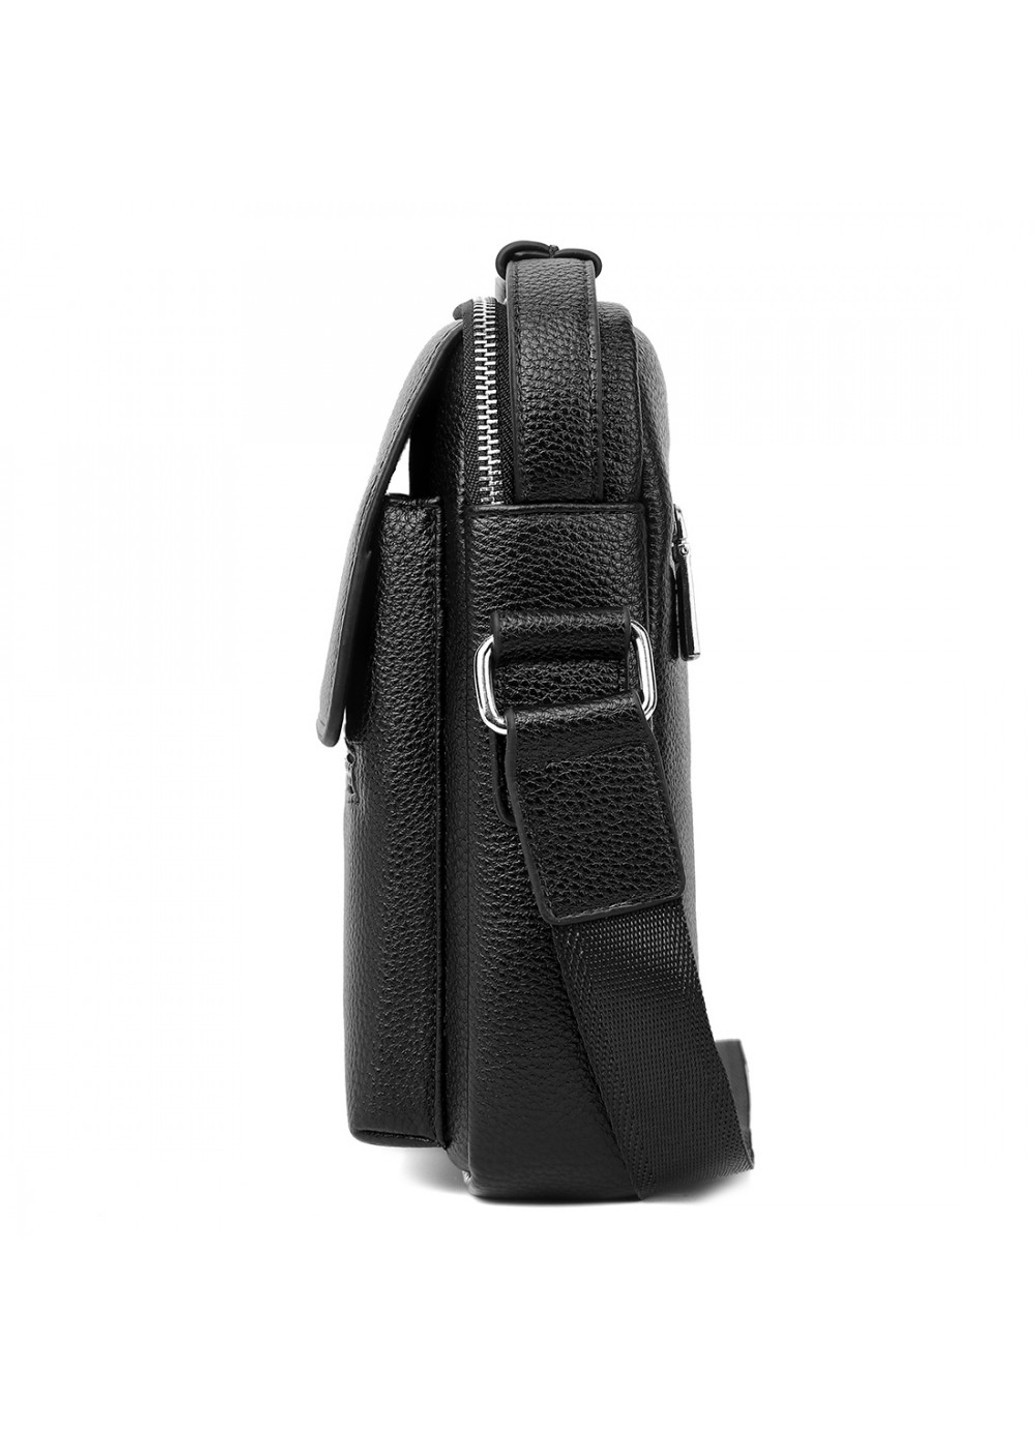 Мужская сумка VICUNA (1007-BL) черная Polo (263360640)